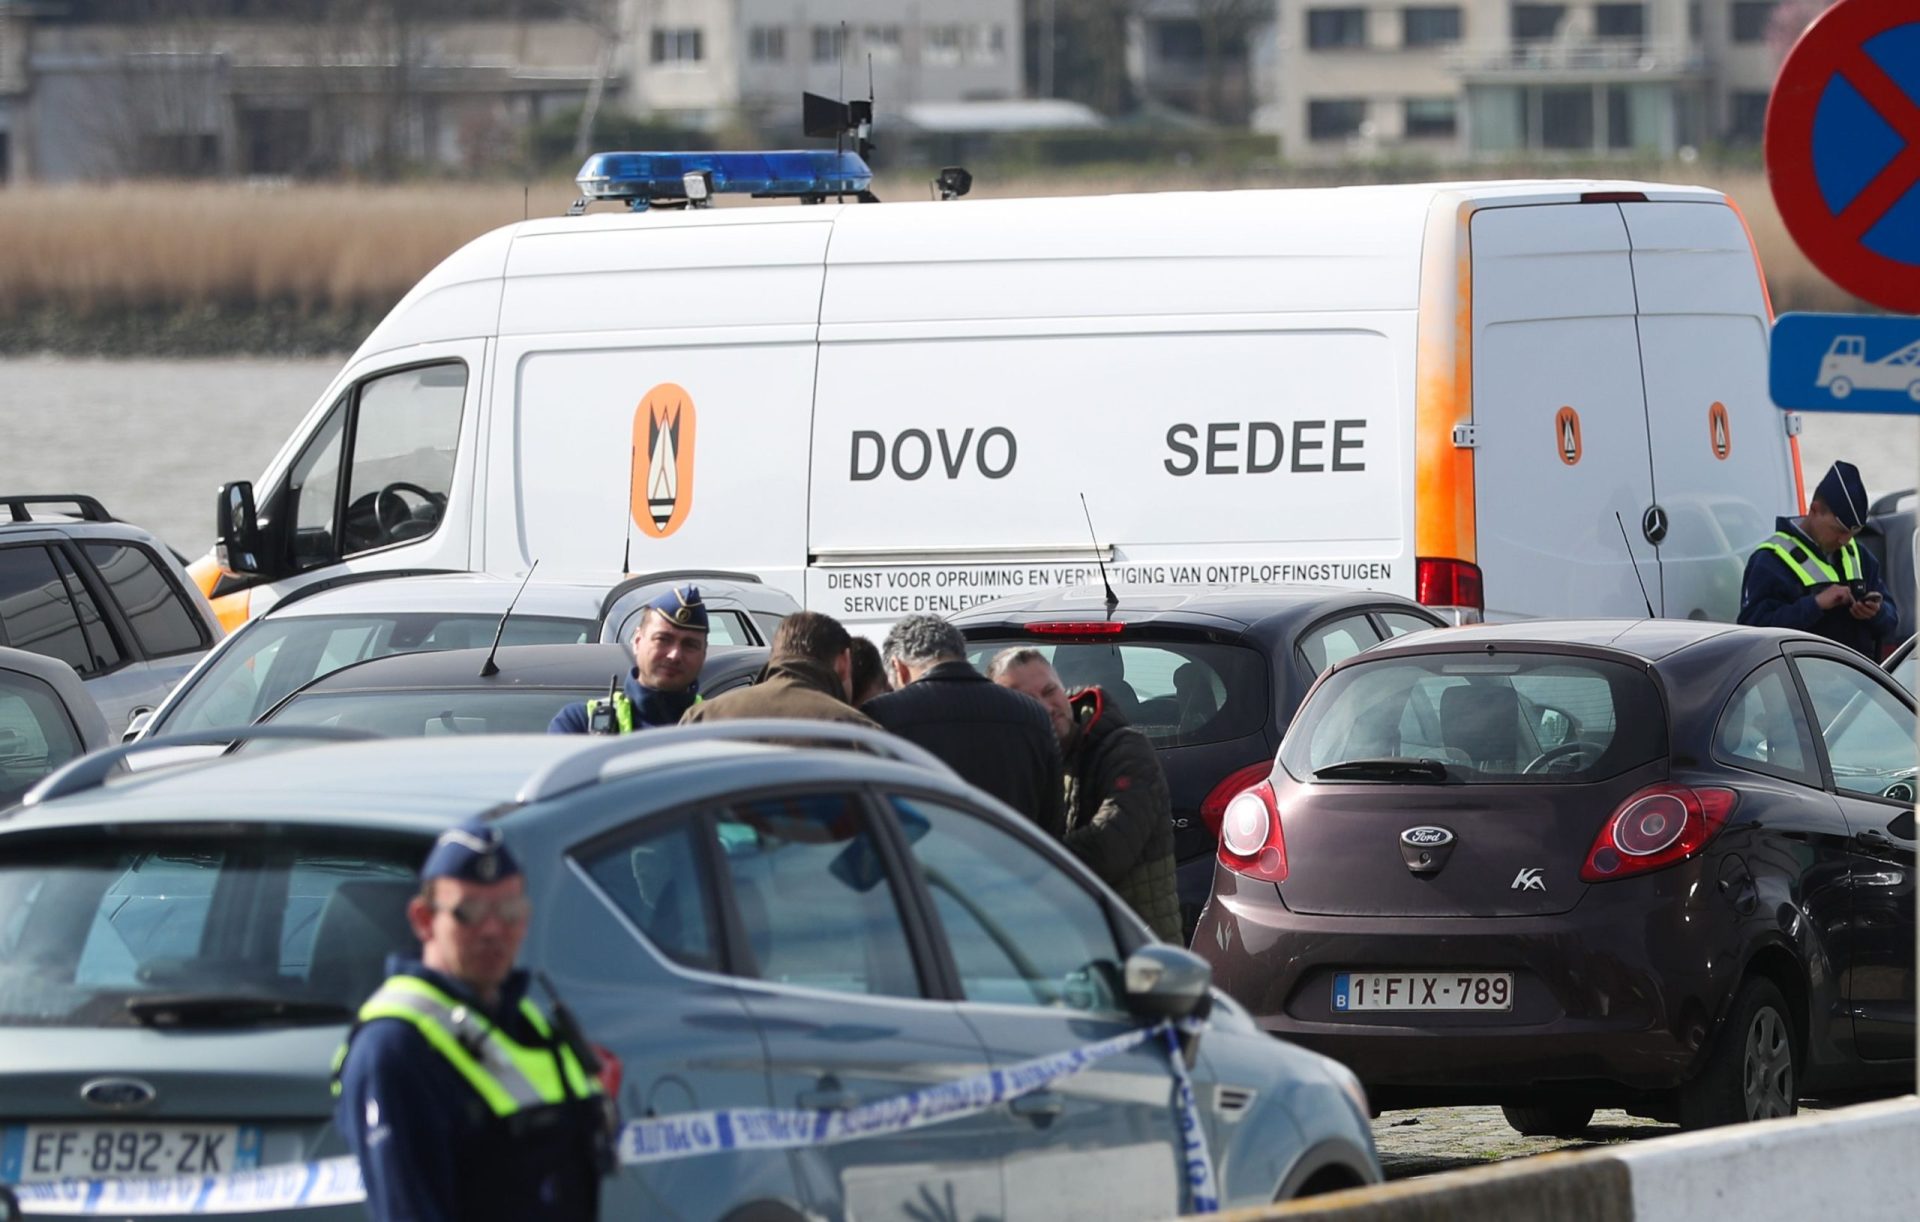 Polícia detém suspeito por conduzir a alta velocidade no centro Antuérpia